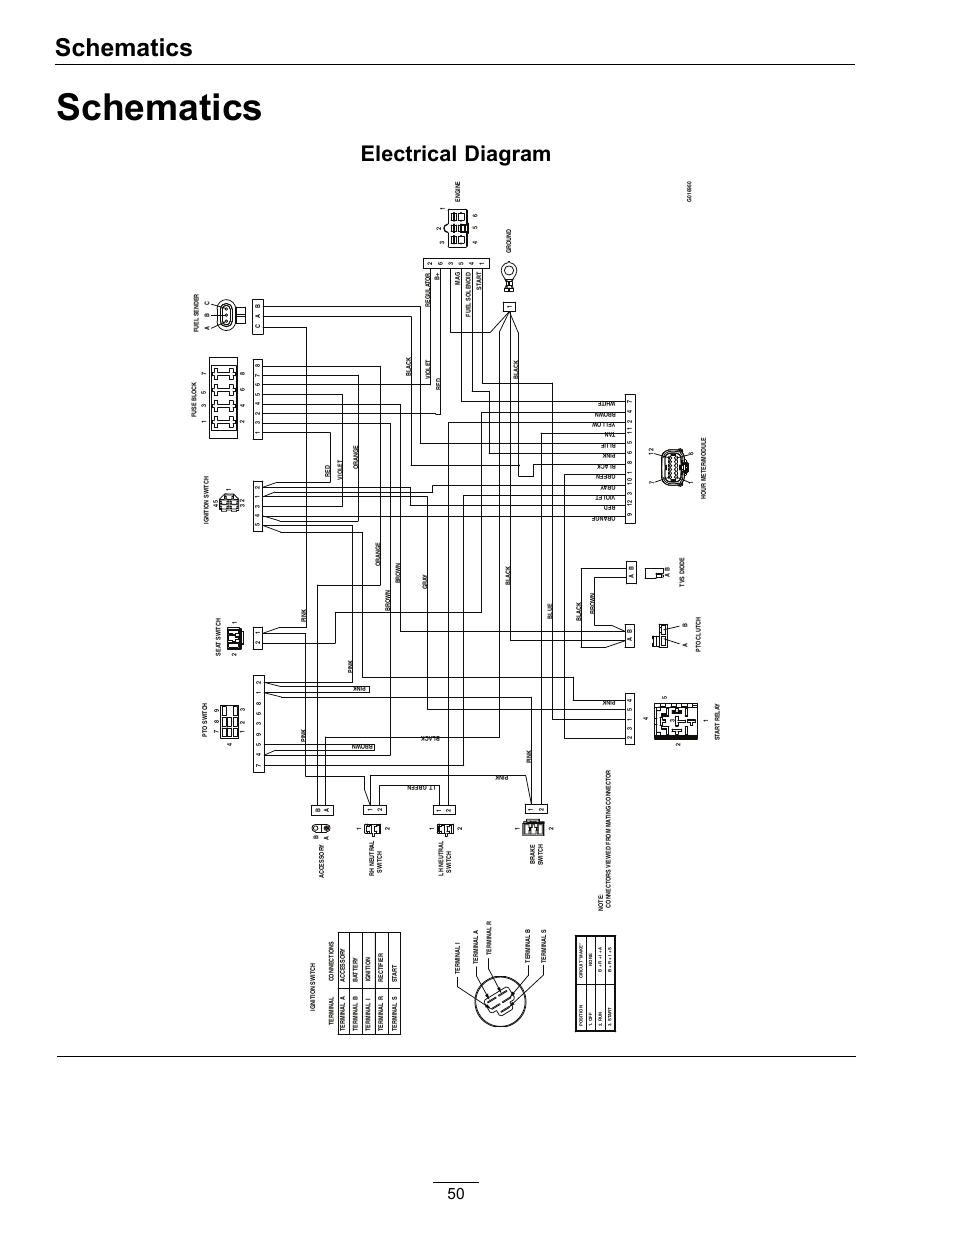 wiring diagram 1998 f150 xlt ext. cab 4x4 sb.